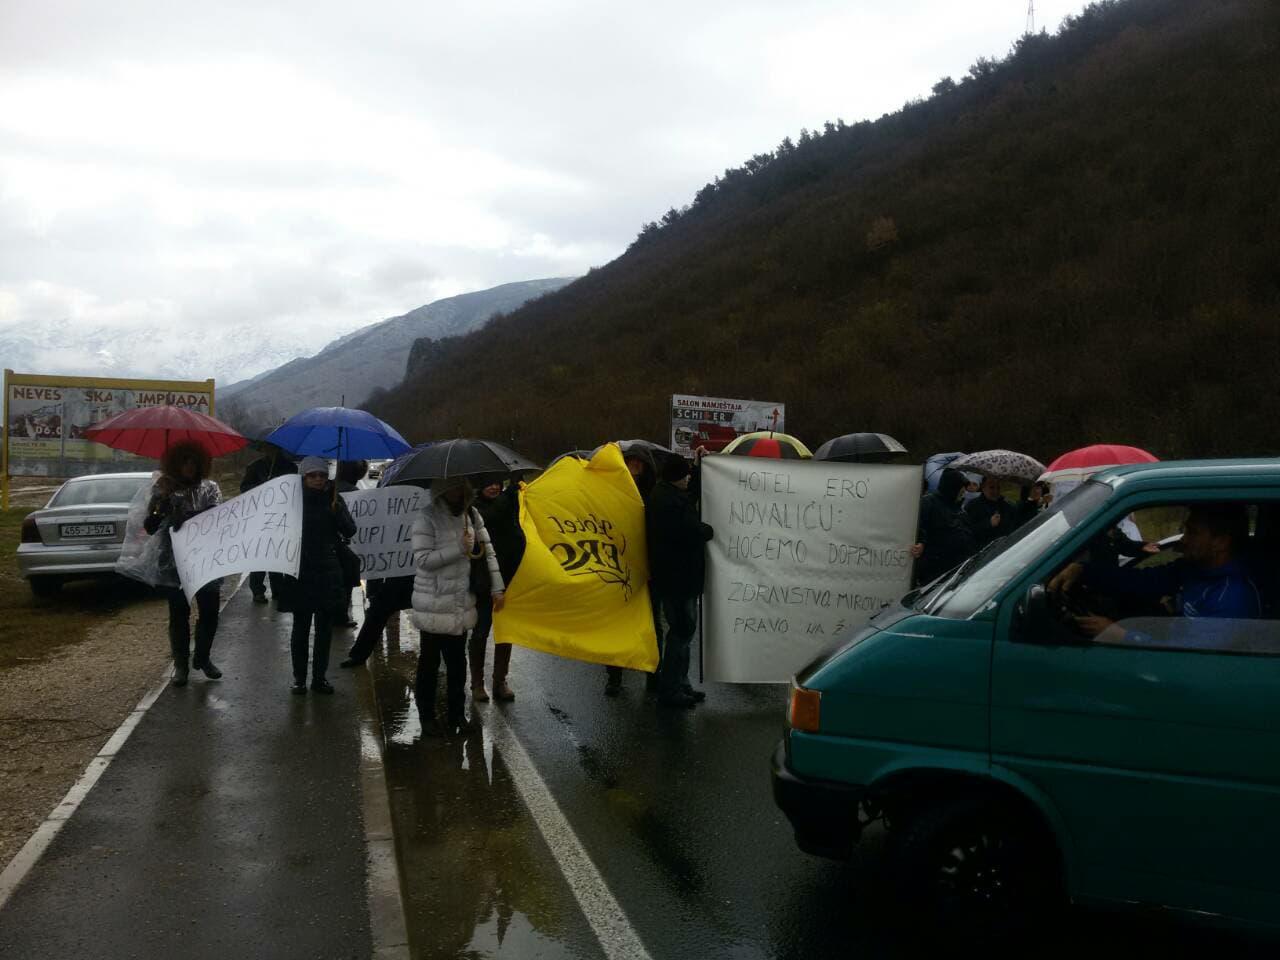 Radnici "Ere" održali kratak protest: Novaliću, hoćemo doprinose i pravo na život